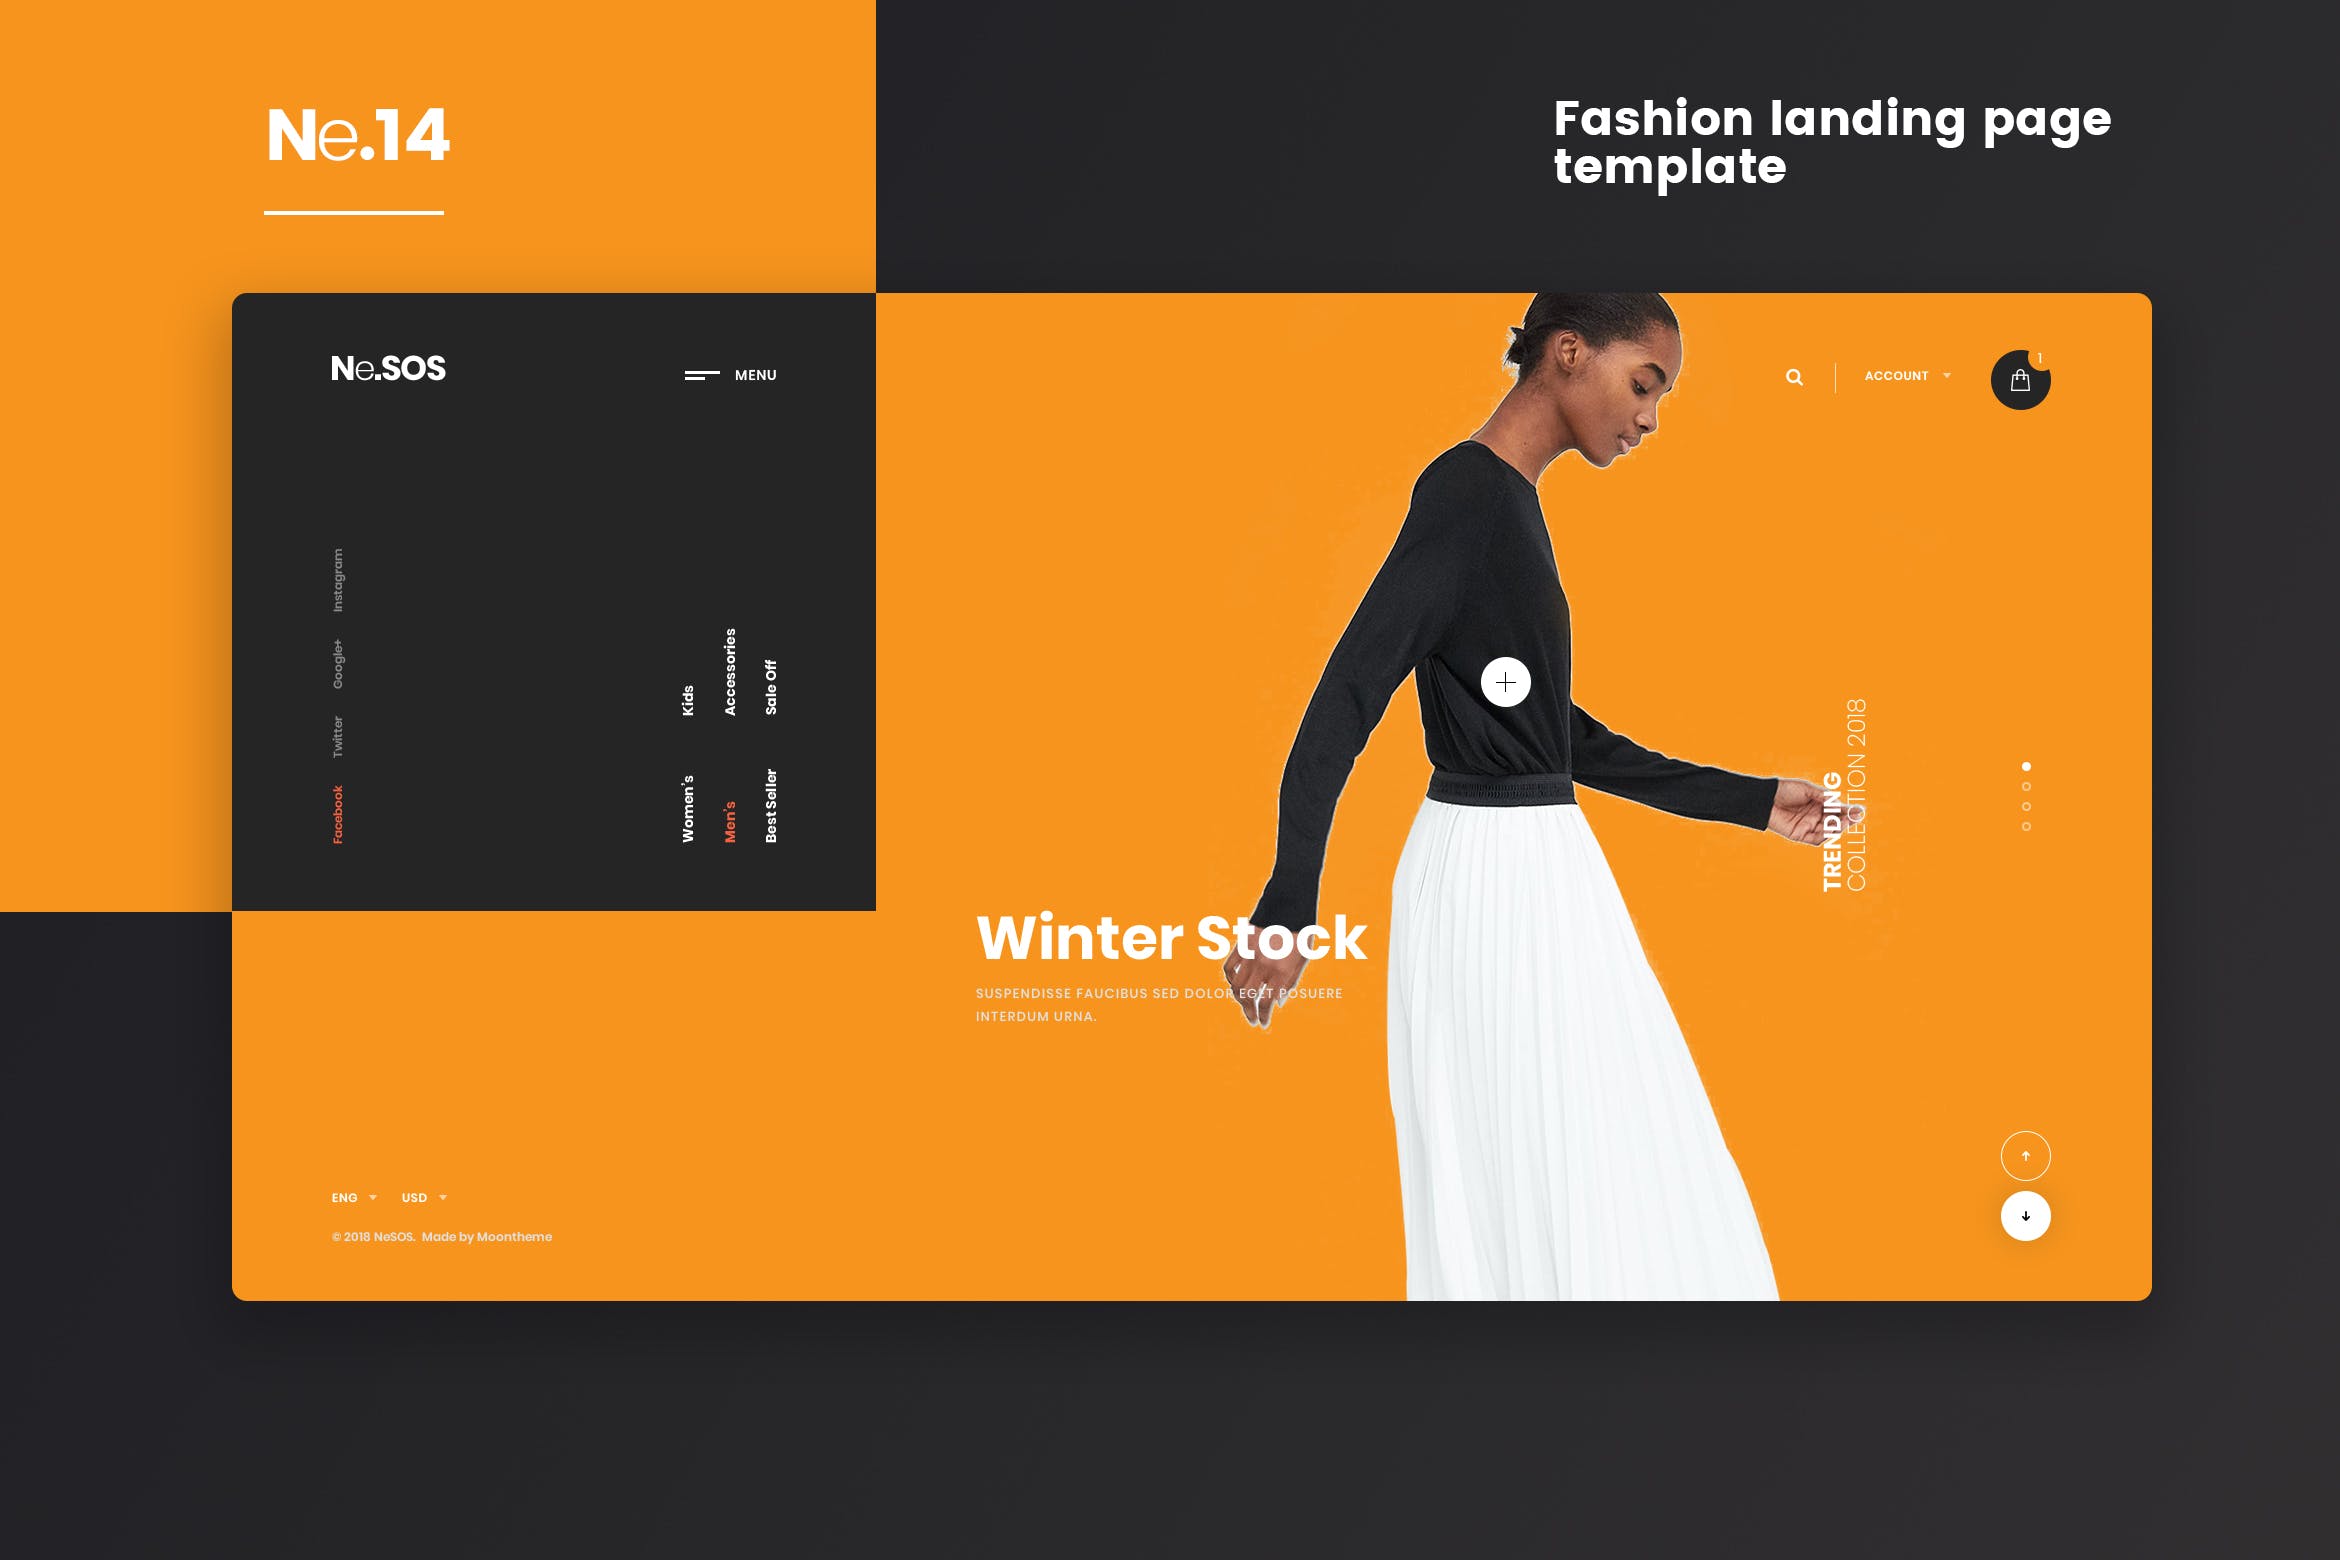 高端时尚品牌网站着陆页设计PSD模板 Ne14 – Fashion landing page template插图